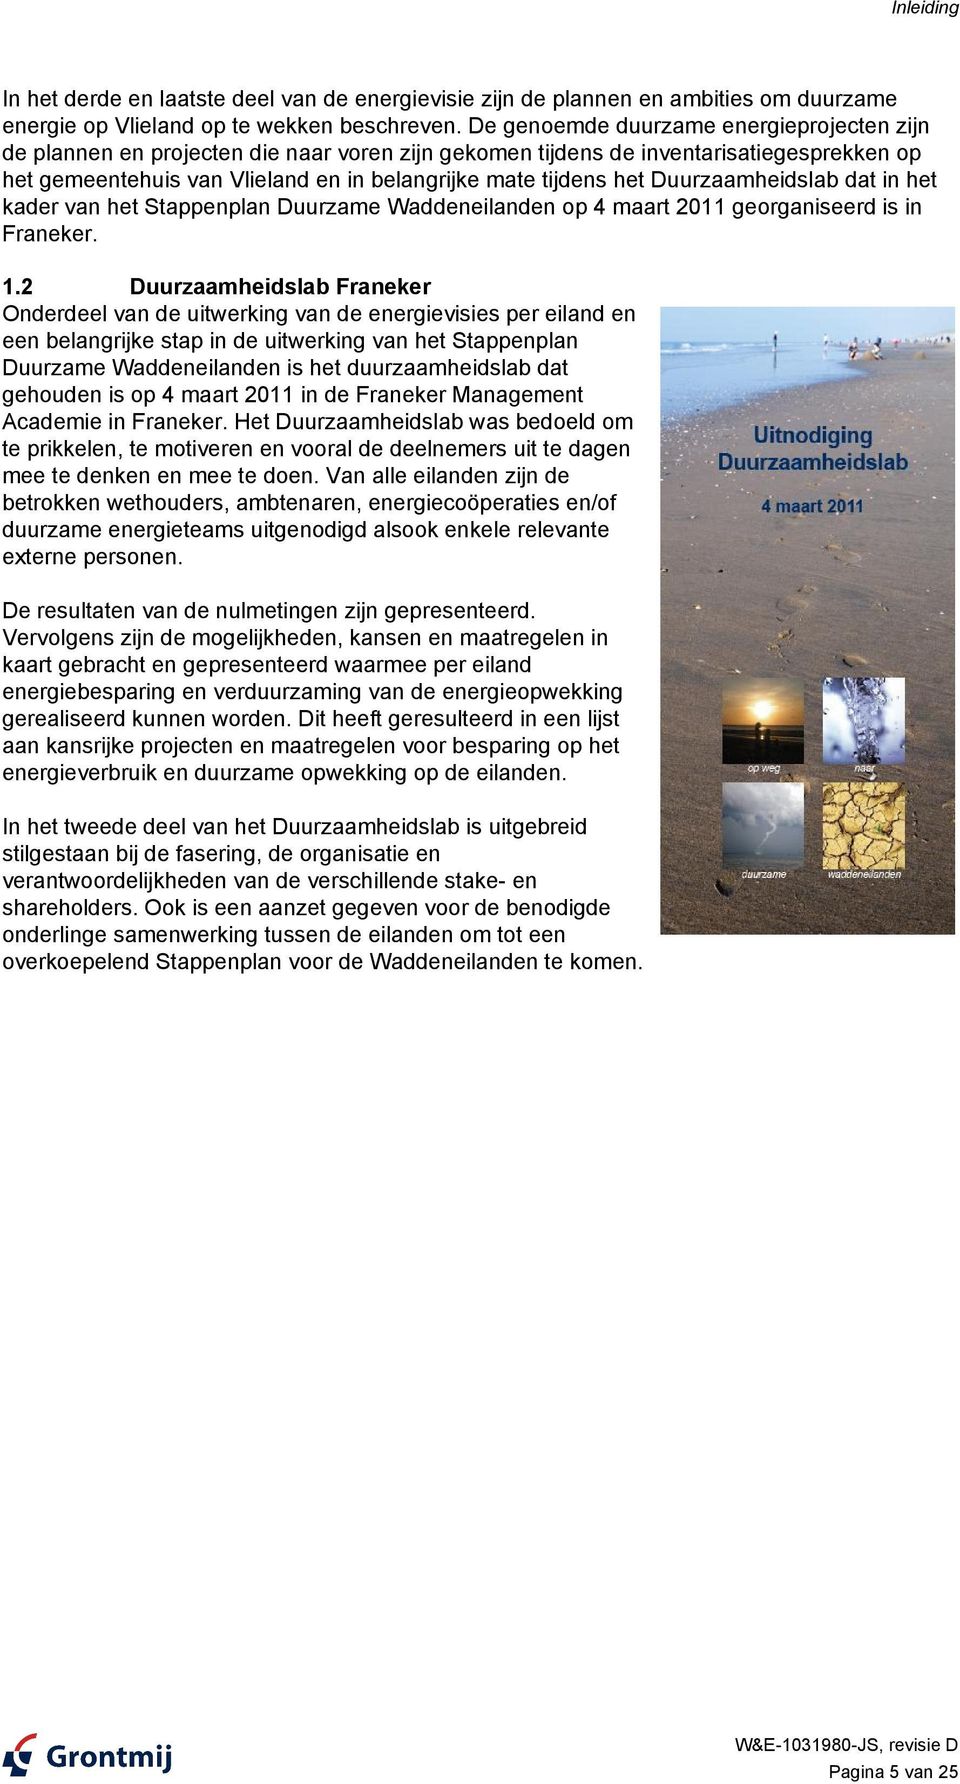 Duurzaamheidslab dat in het kader van het Stappenplan Duurzame Waddeneilanden op 4 maart 2011 georganiseerd is in Franeker. 1.